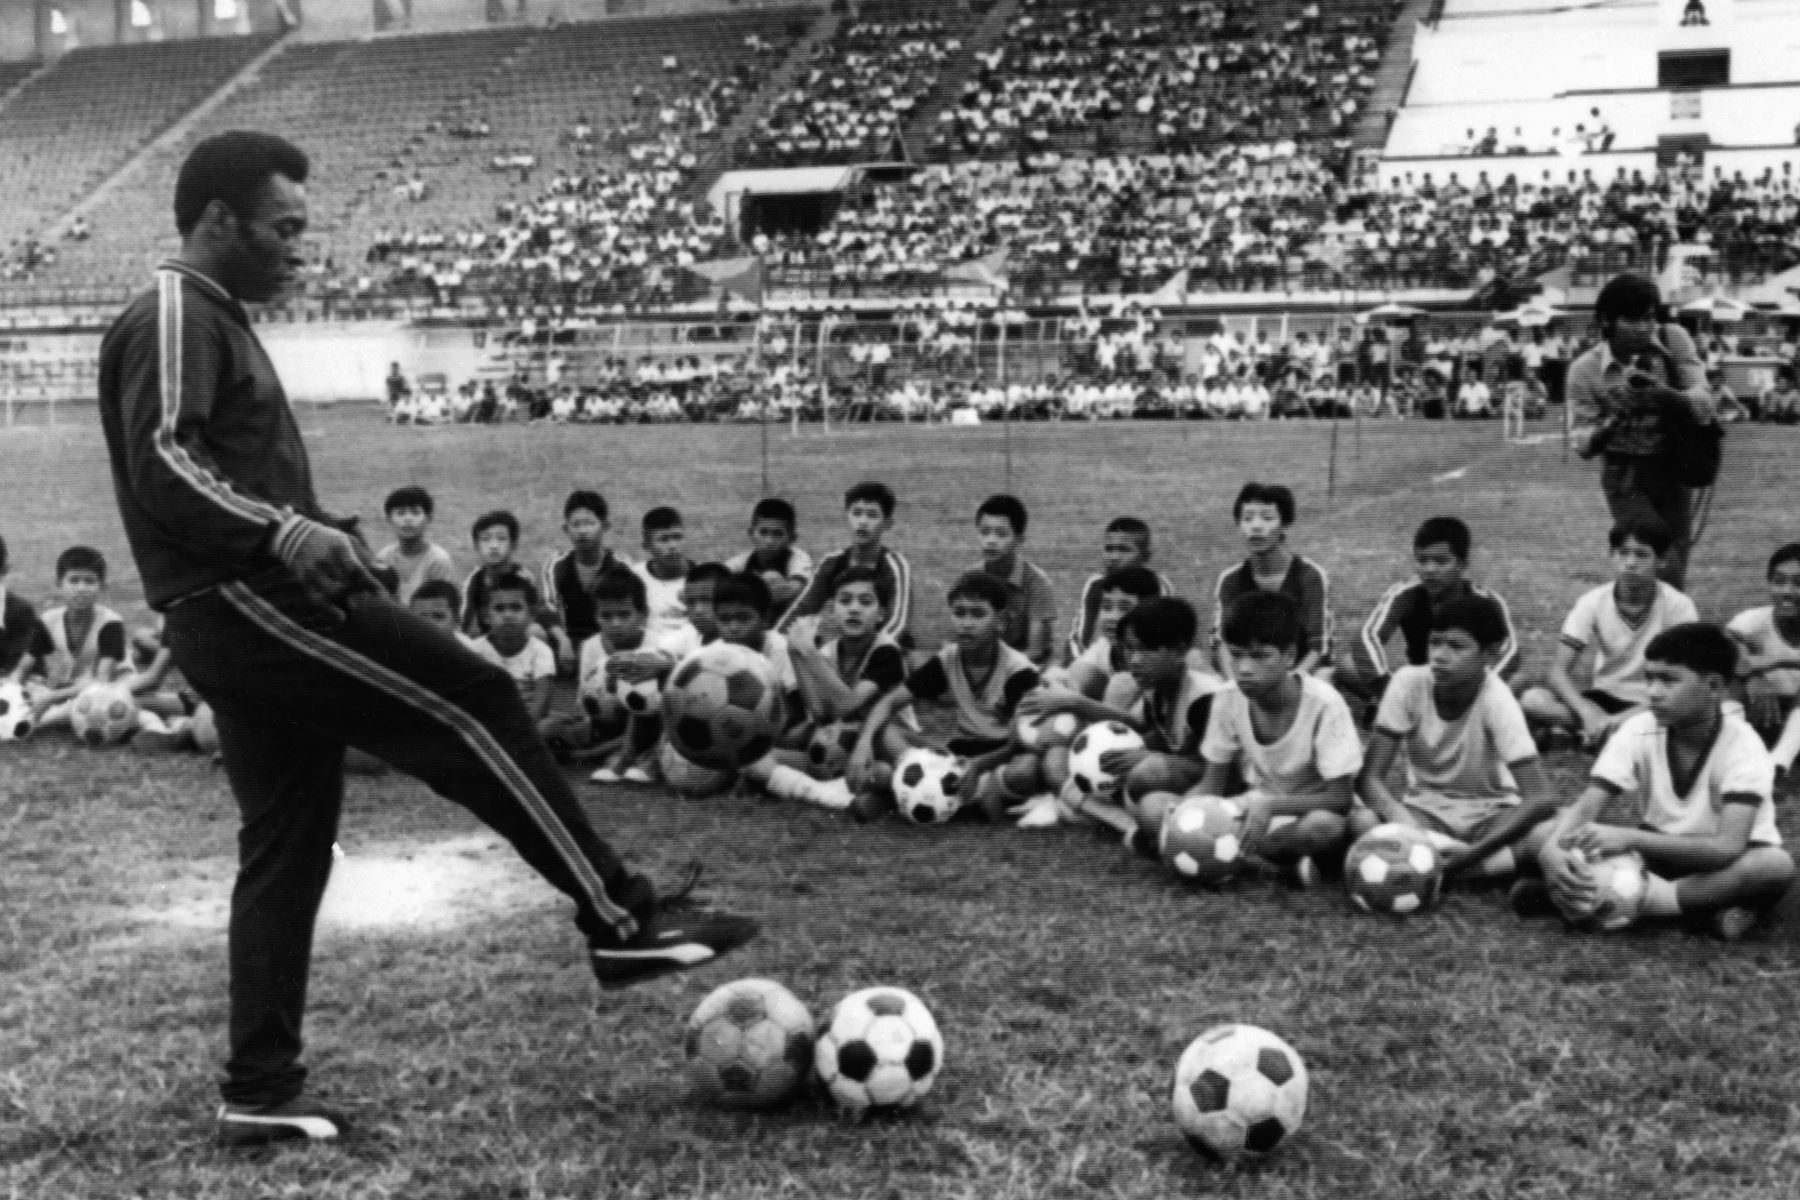 La foto tomada el 6 de diciembre de 1974 en Bangkok muestra al futbolista brasileño Pelé durante una sesión de entrenamiento con un niño como parte de un viaje comercial en Tailandia. Foto: AFP